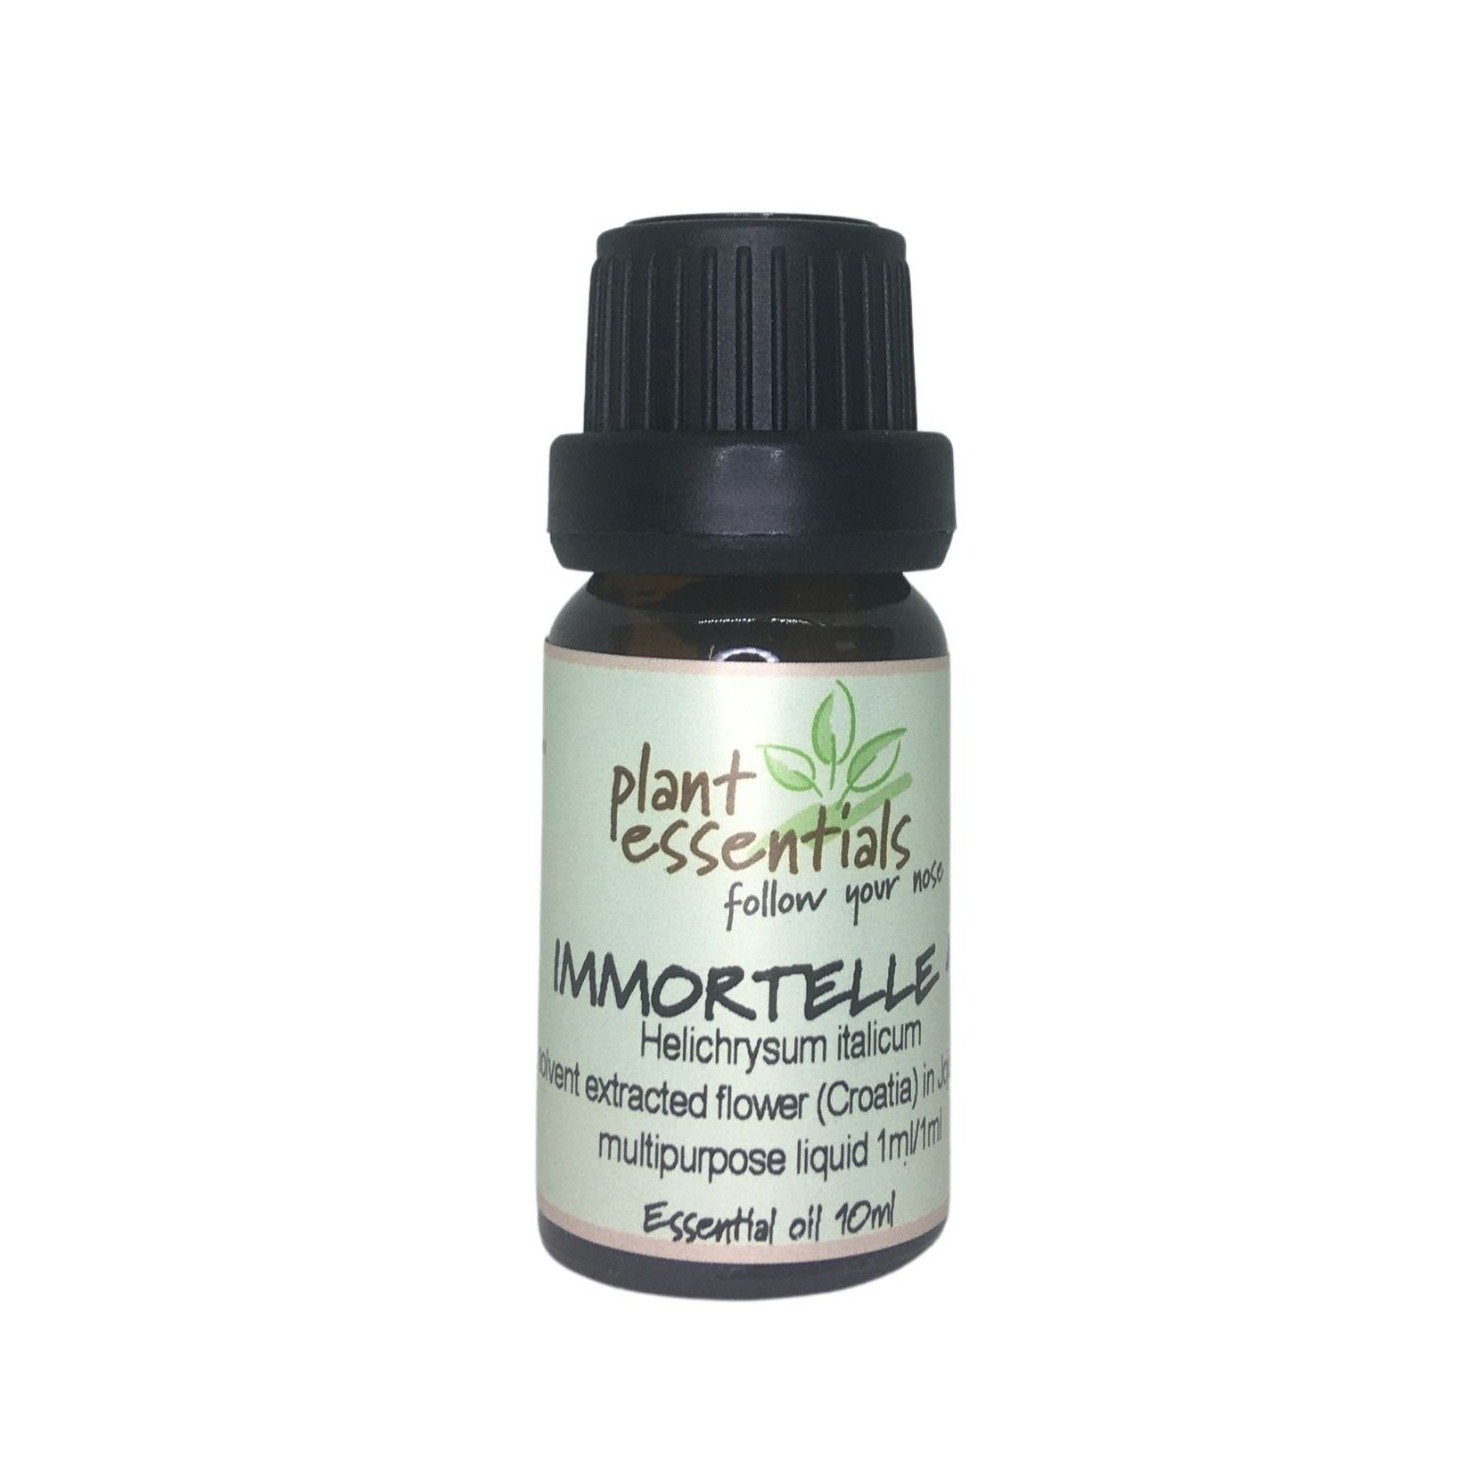 Immortelle (Helicrysium) Essential Oil, Helichrysum italicum